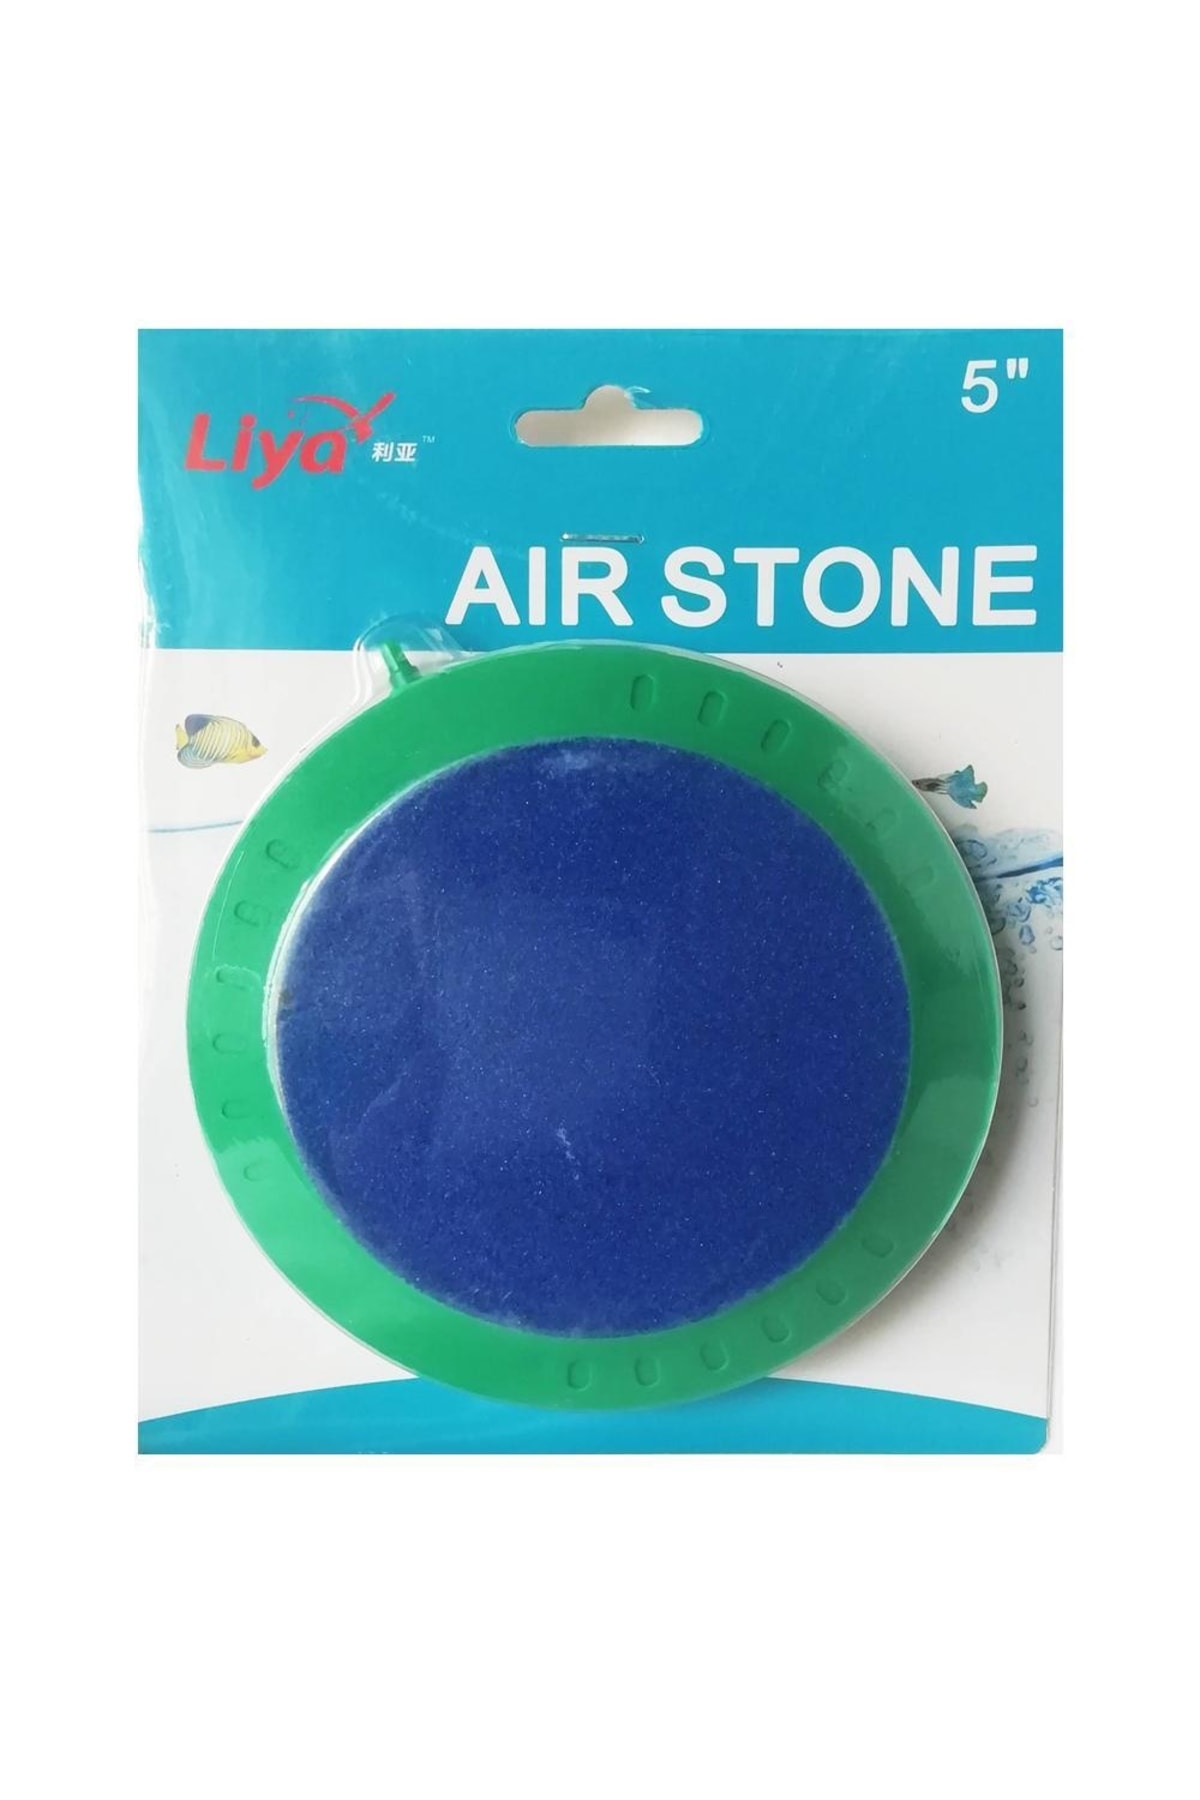 Liya Air Stone Disk Yuvarlak Akvaryum Hava Taşı 12.5cm